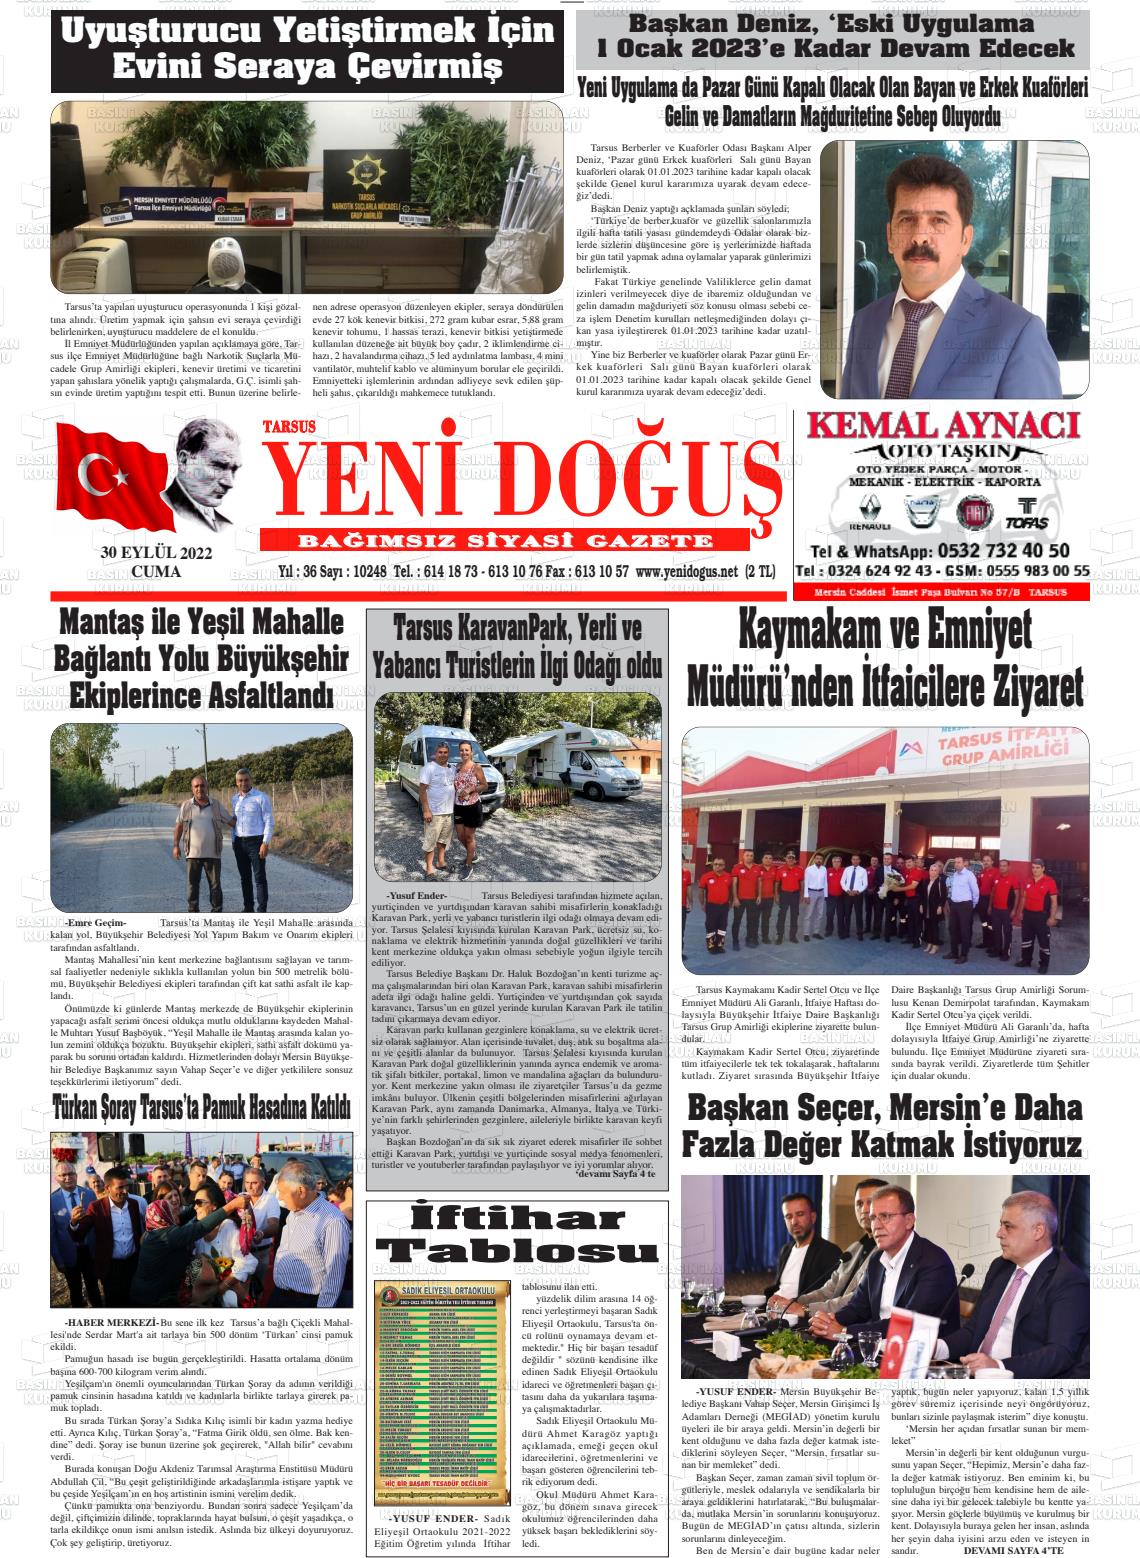 30 Eylül 2022 Tarsus Yeni Doğuş Gazete Manşeti